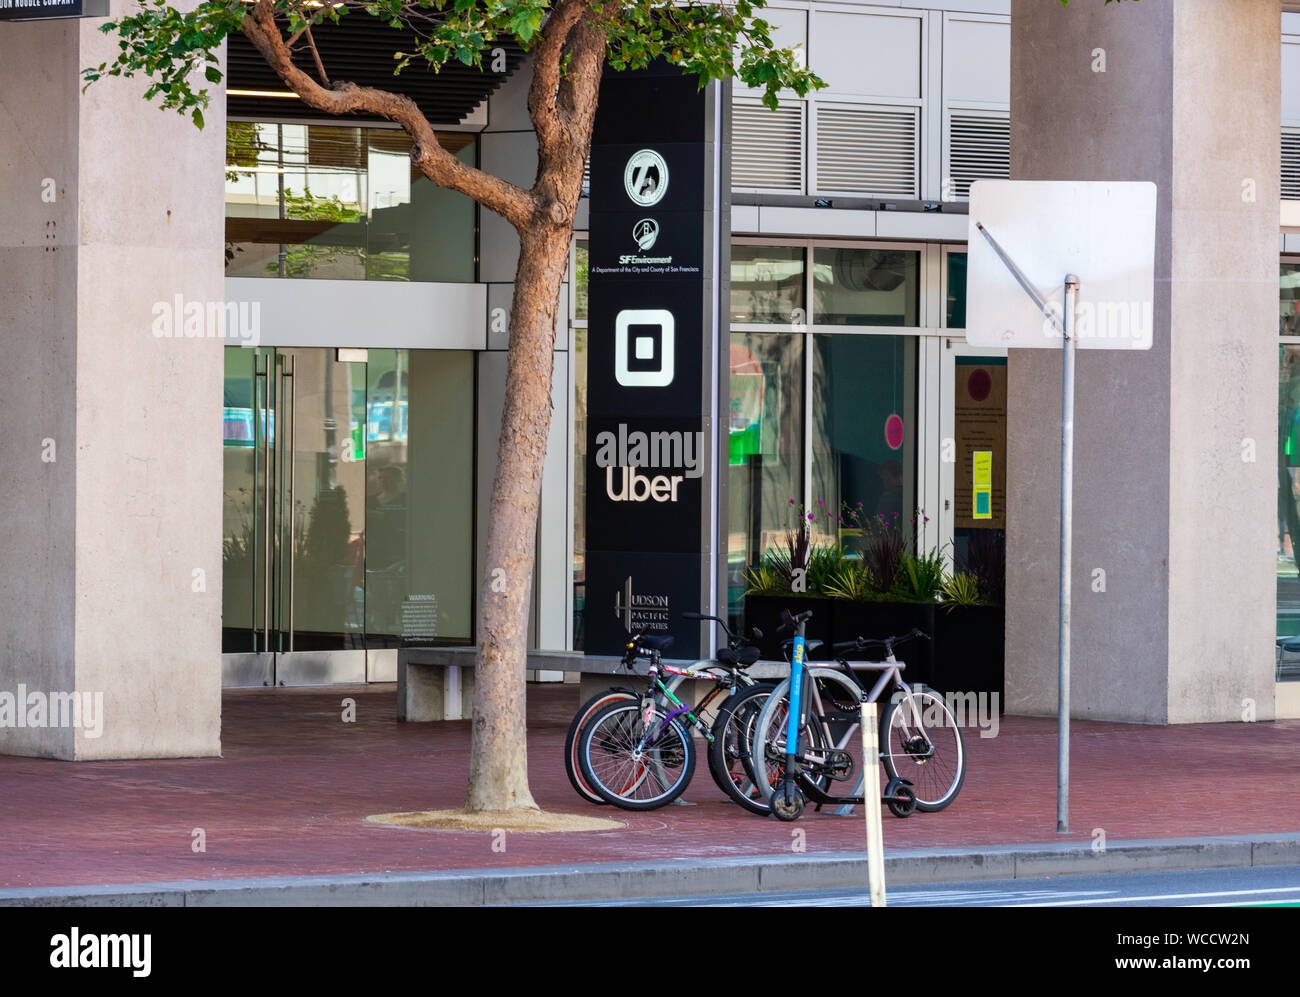 Uber e logo piazza vicino all'ingresso della sede della società di software su Market street Foto Stock